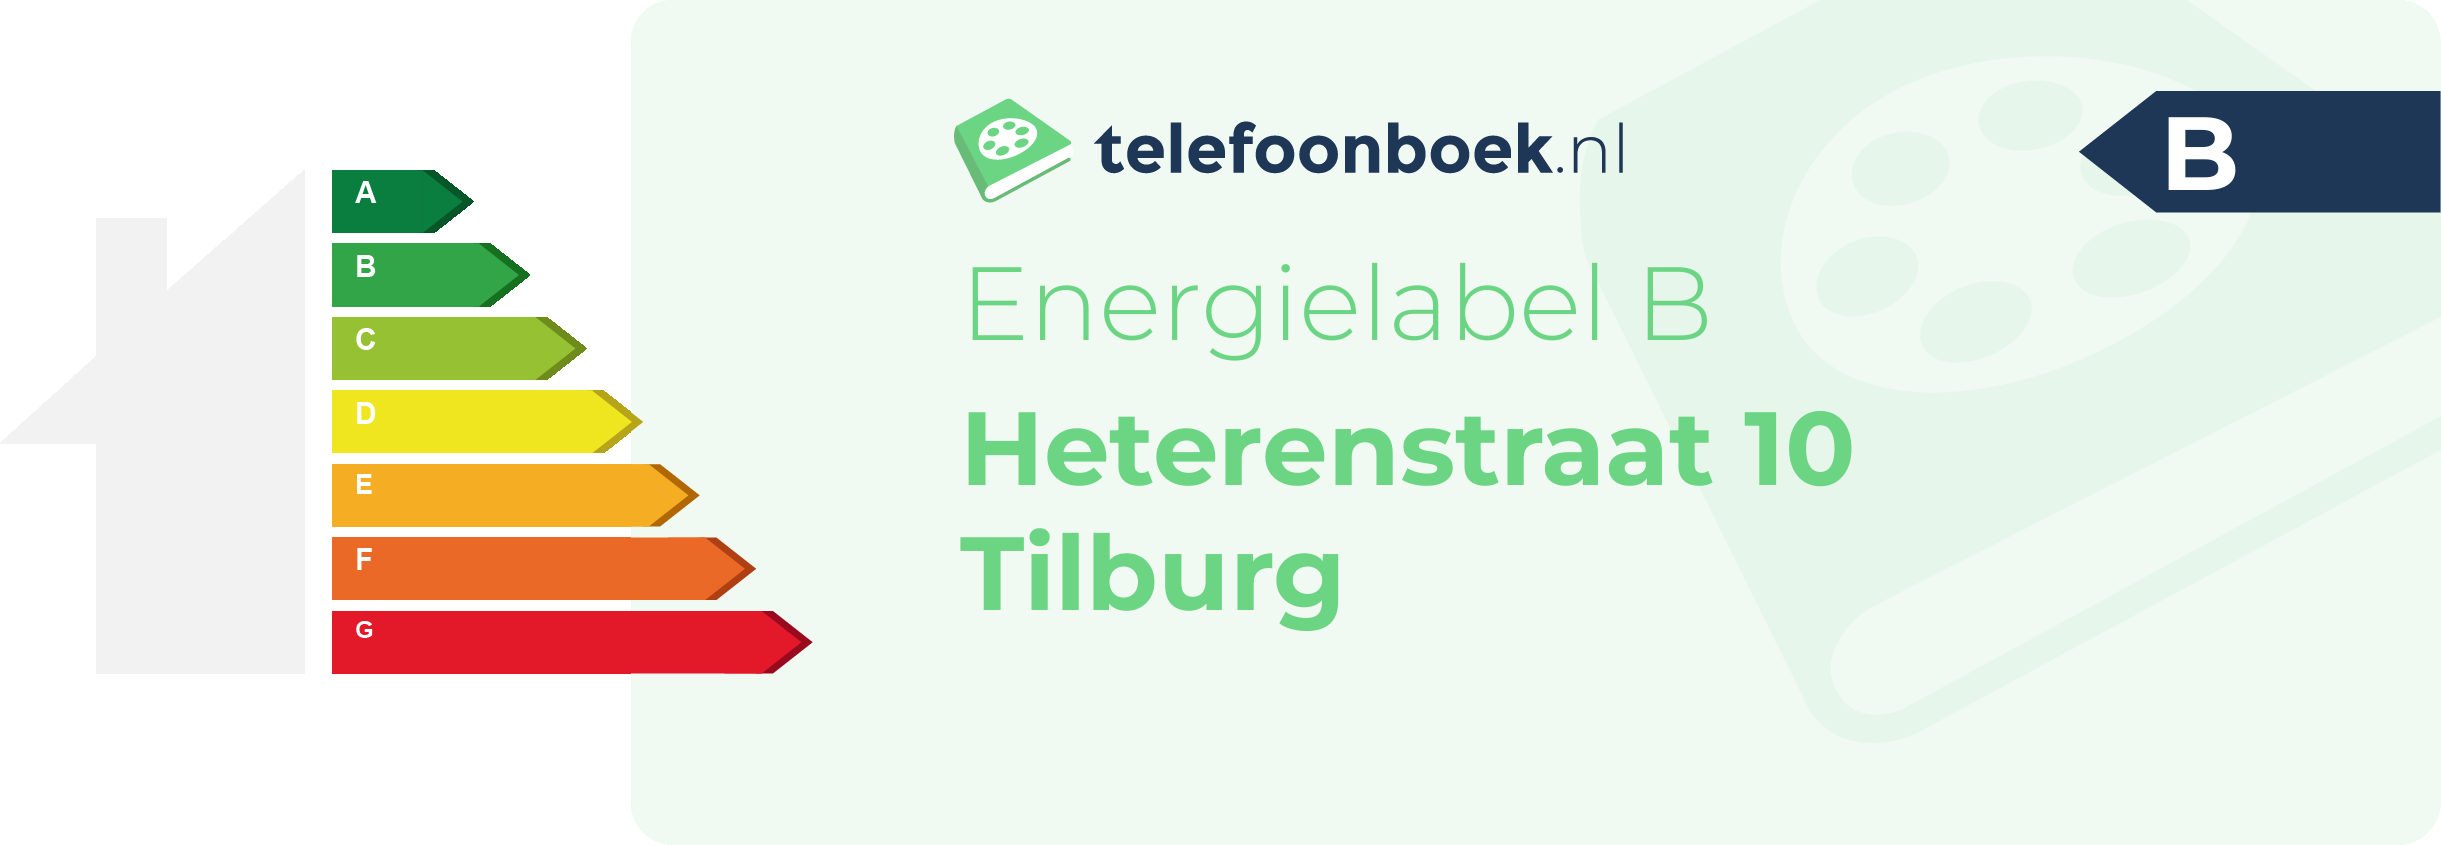 Energielabel Heterenstraat 10 Tilburg